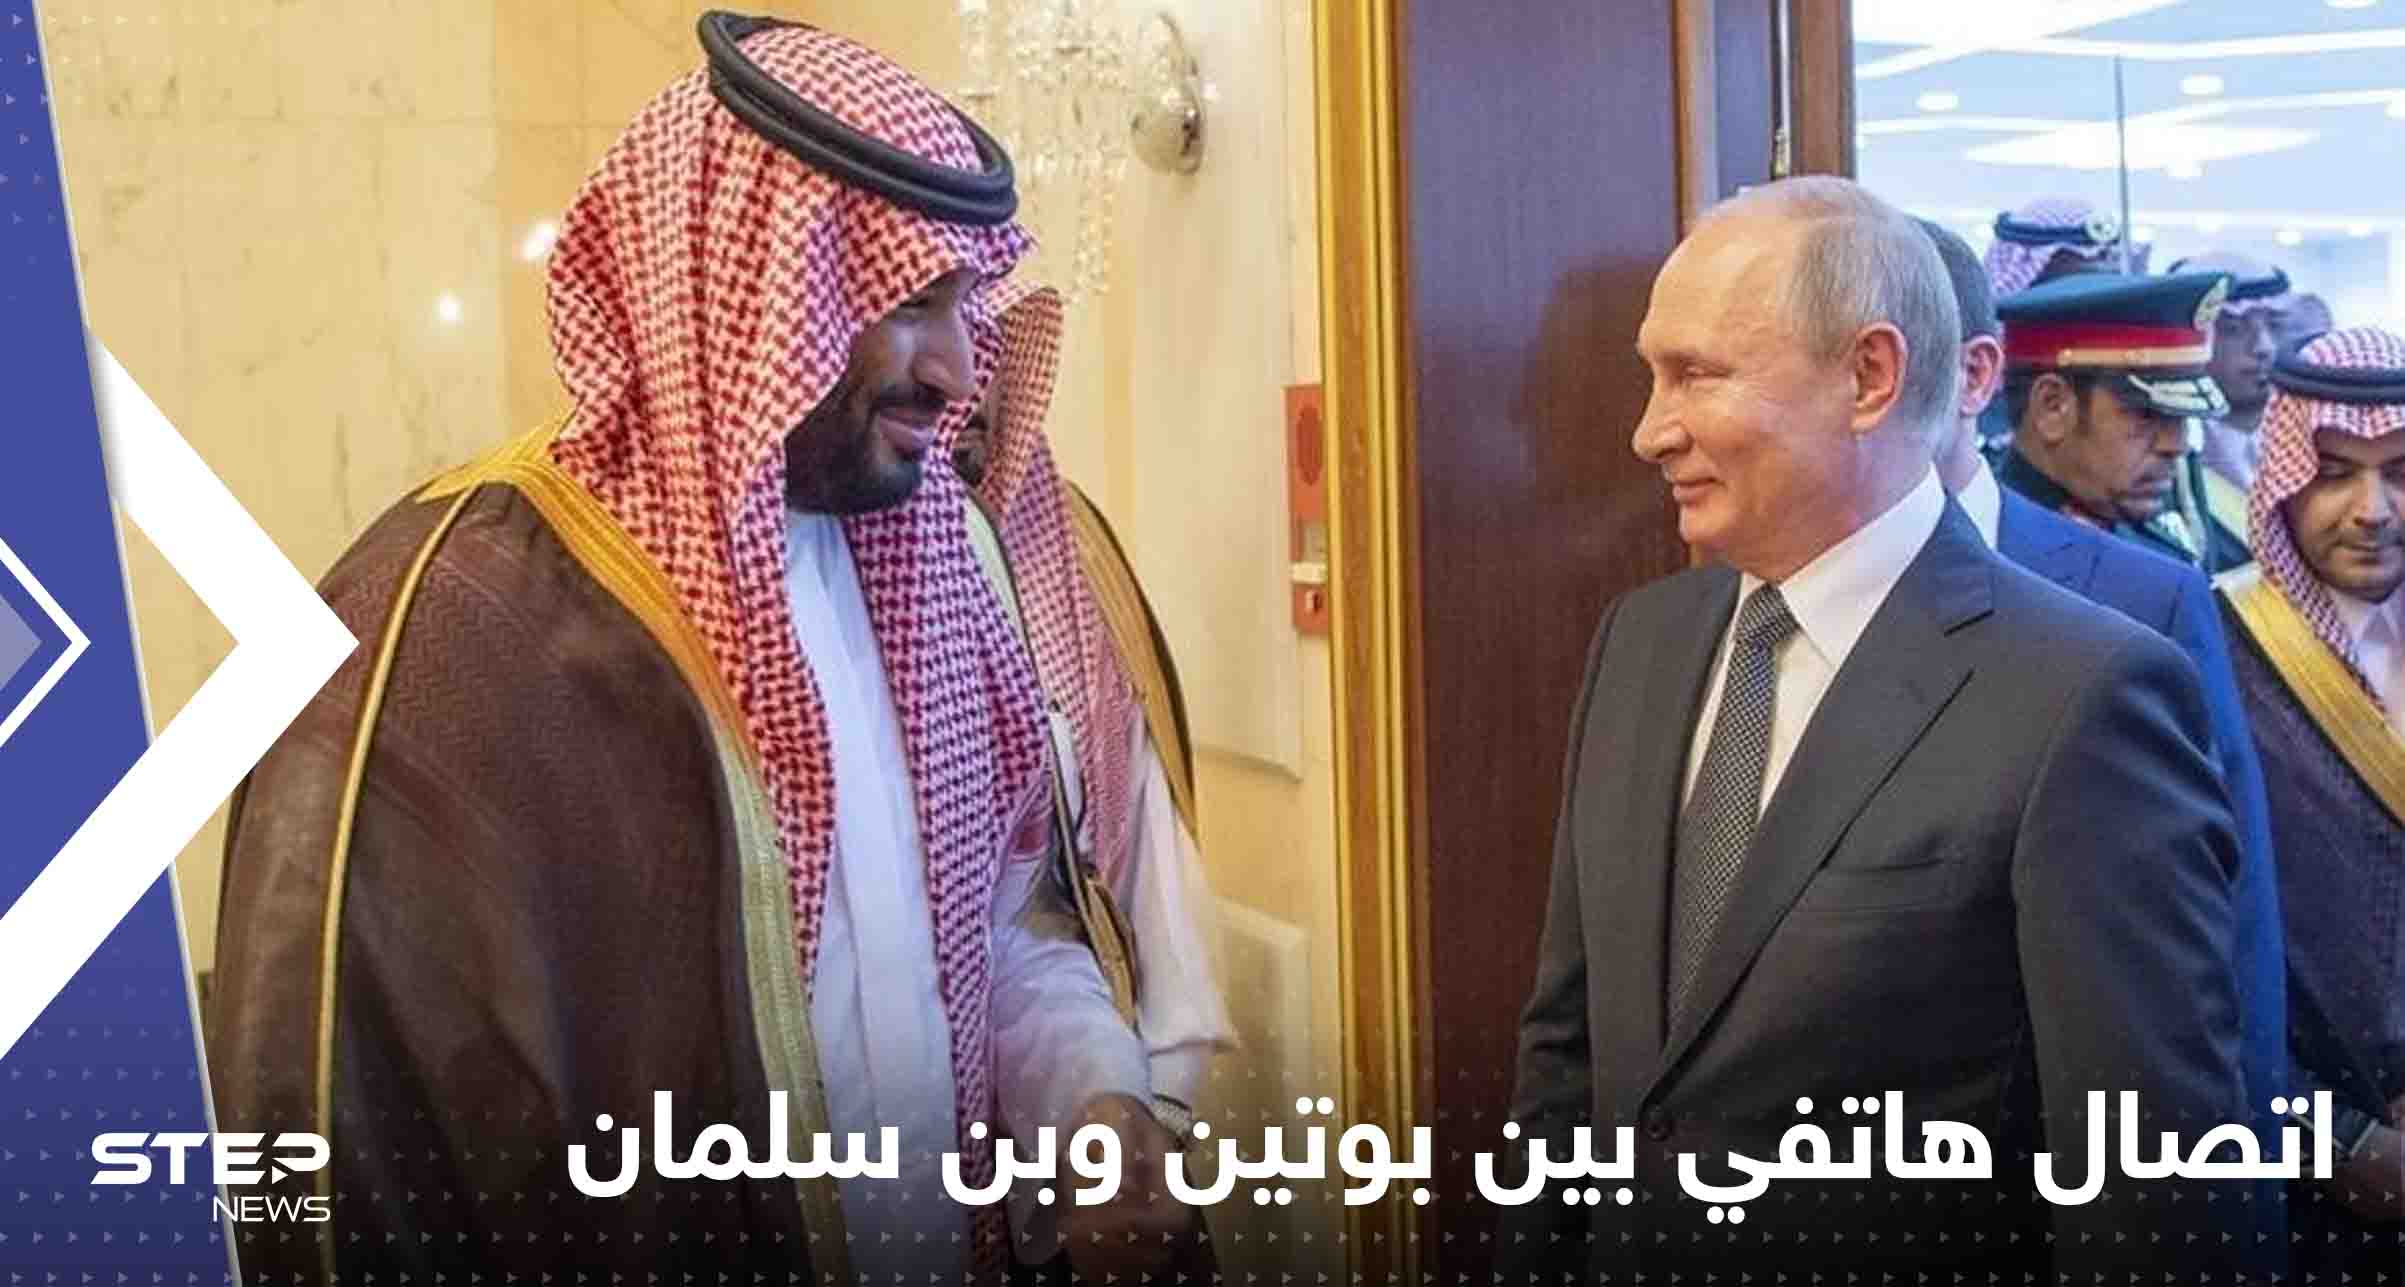 الكرملين يعلق على الاتصال الهاتفي بين بوتين وولي العهد السعودي